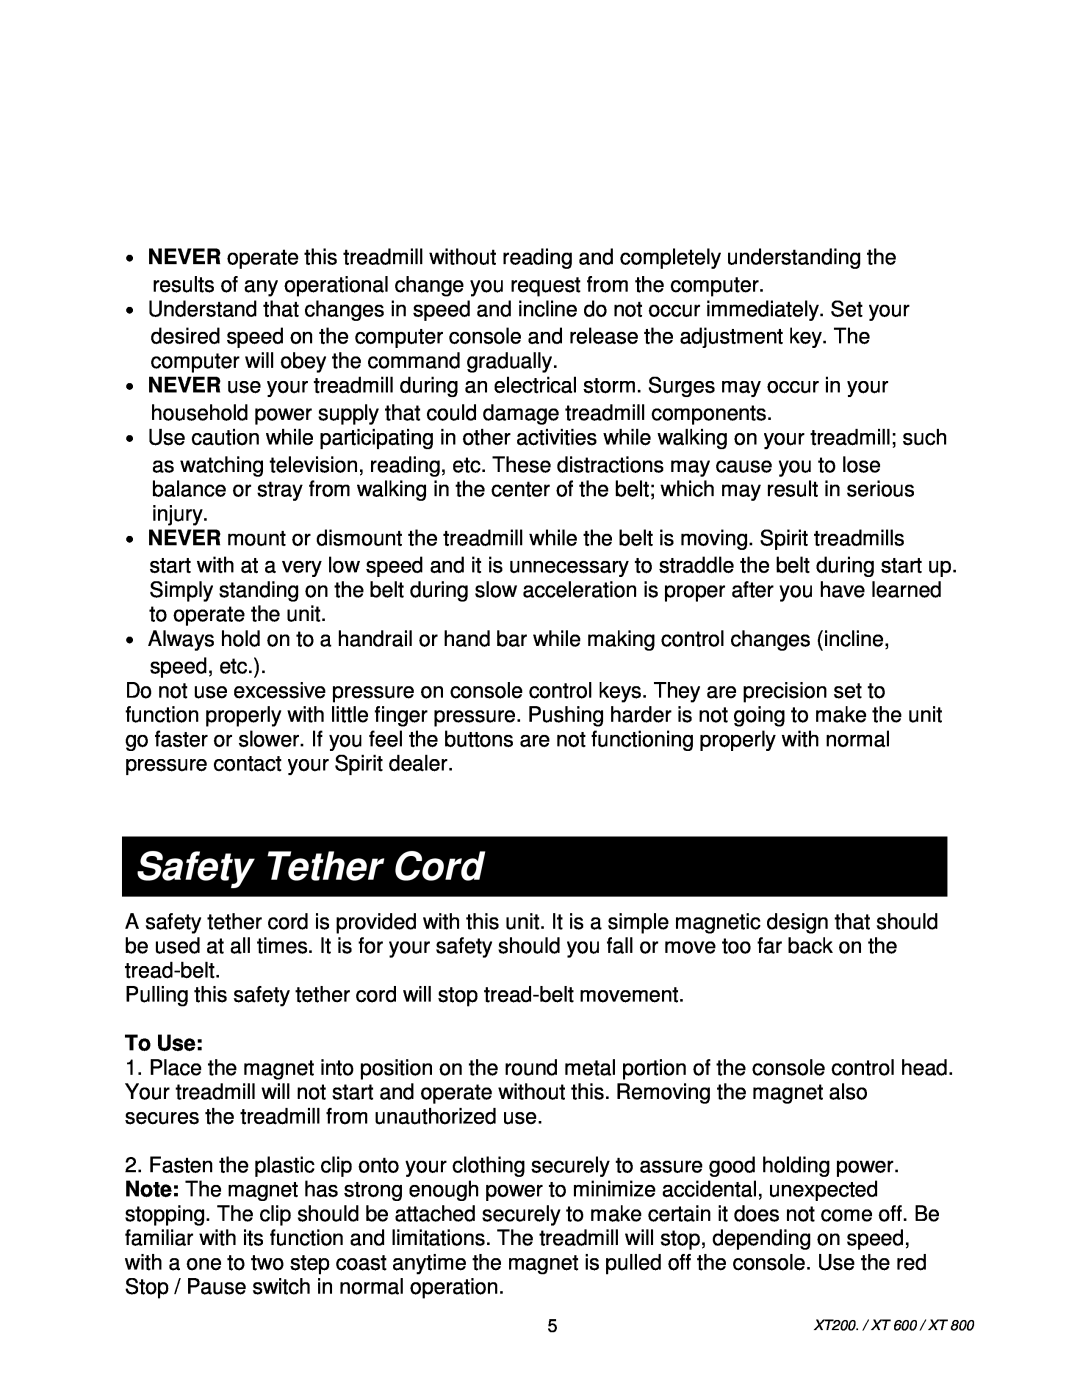 Spirit XT200/XT600, XT800, XT 800, XT 600 owner manual Safety Tether Cord, To Use 